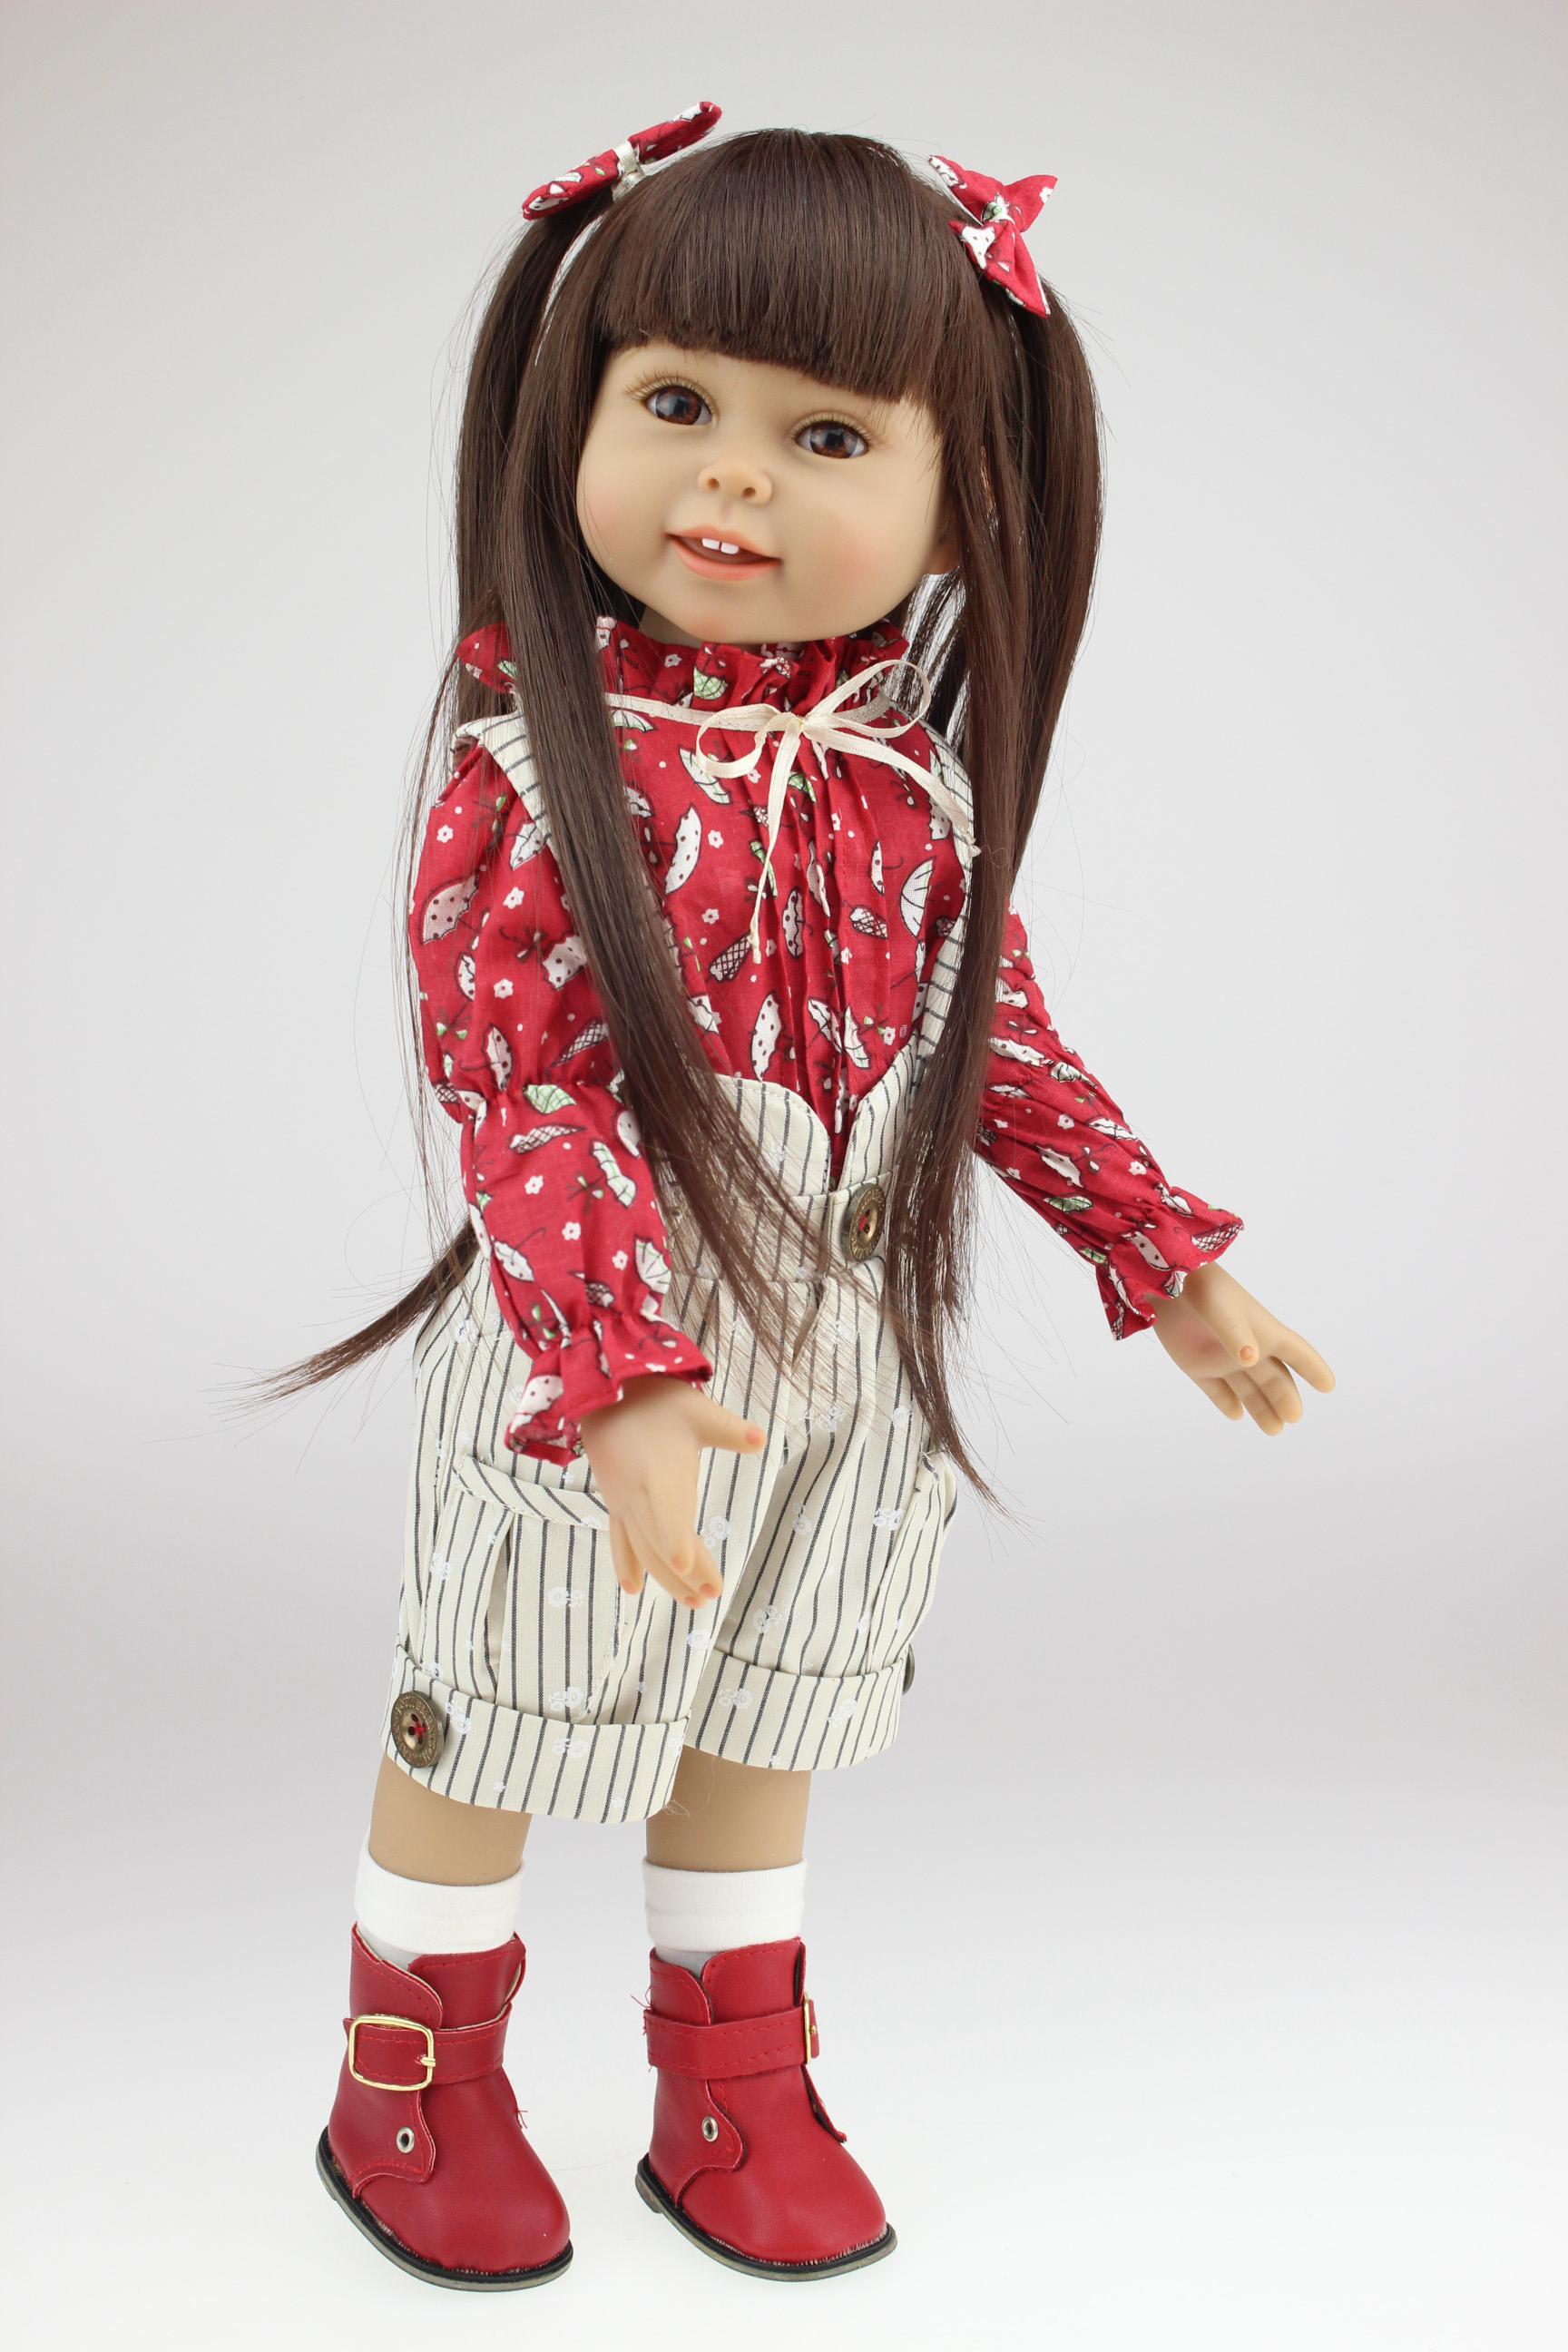 18 Inch Full Vinyl American Girl Doll Realistic Little Girl Dolls ...